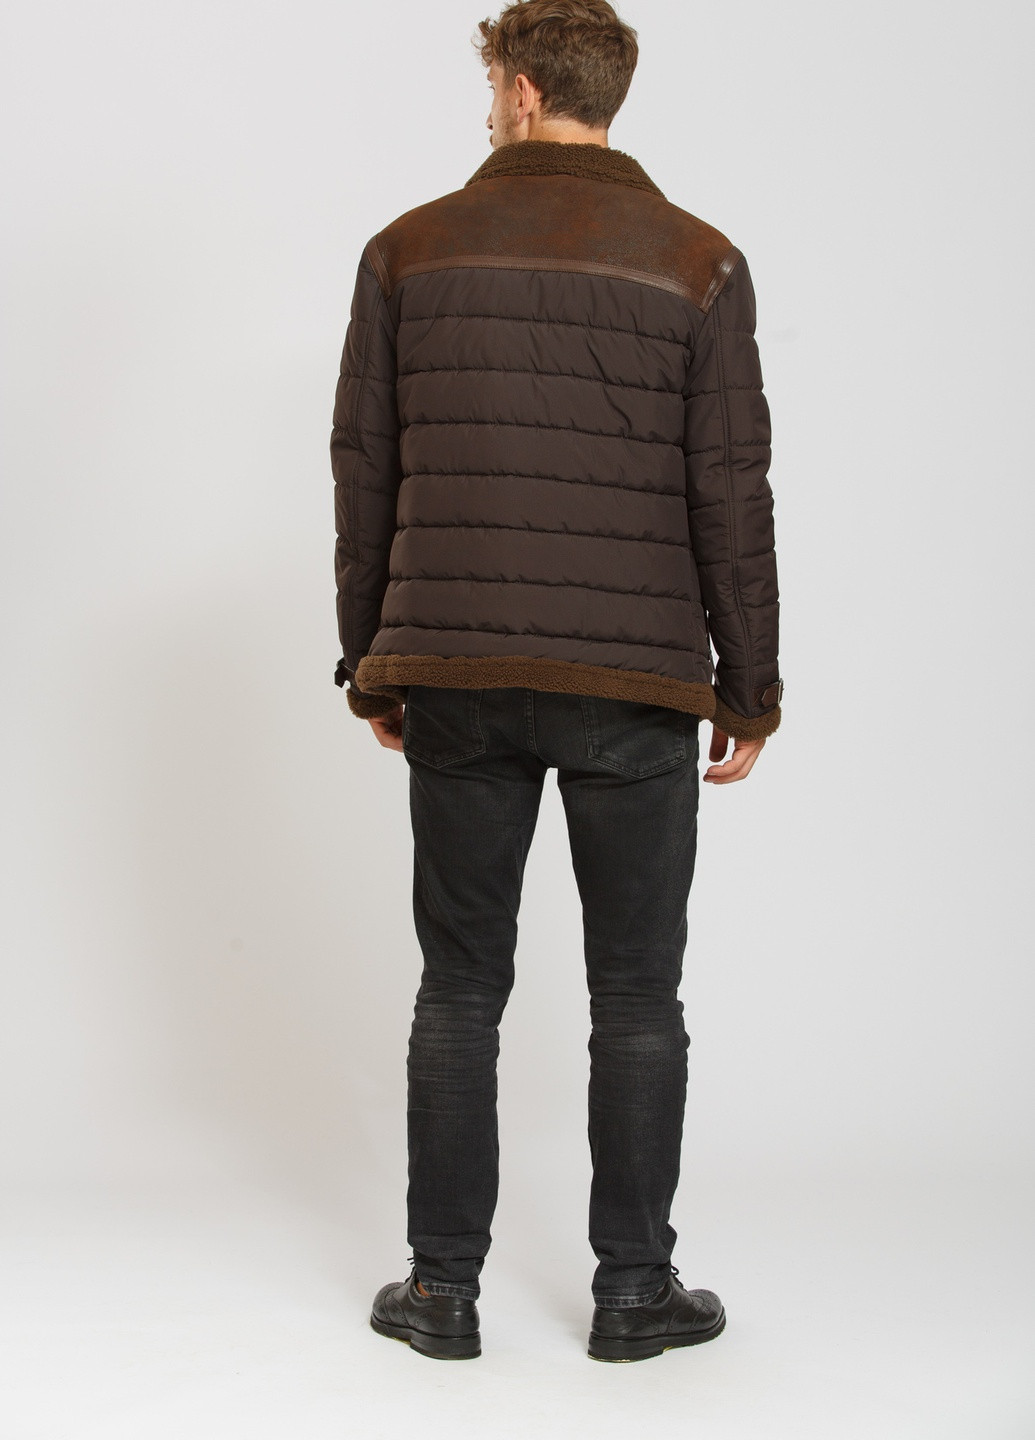 Коричневая зимняя куртка - дубленка коричневый Cvk brand